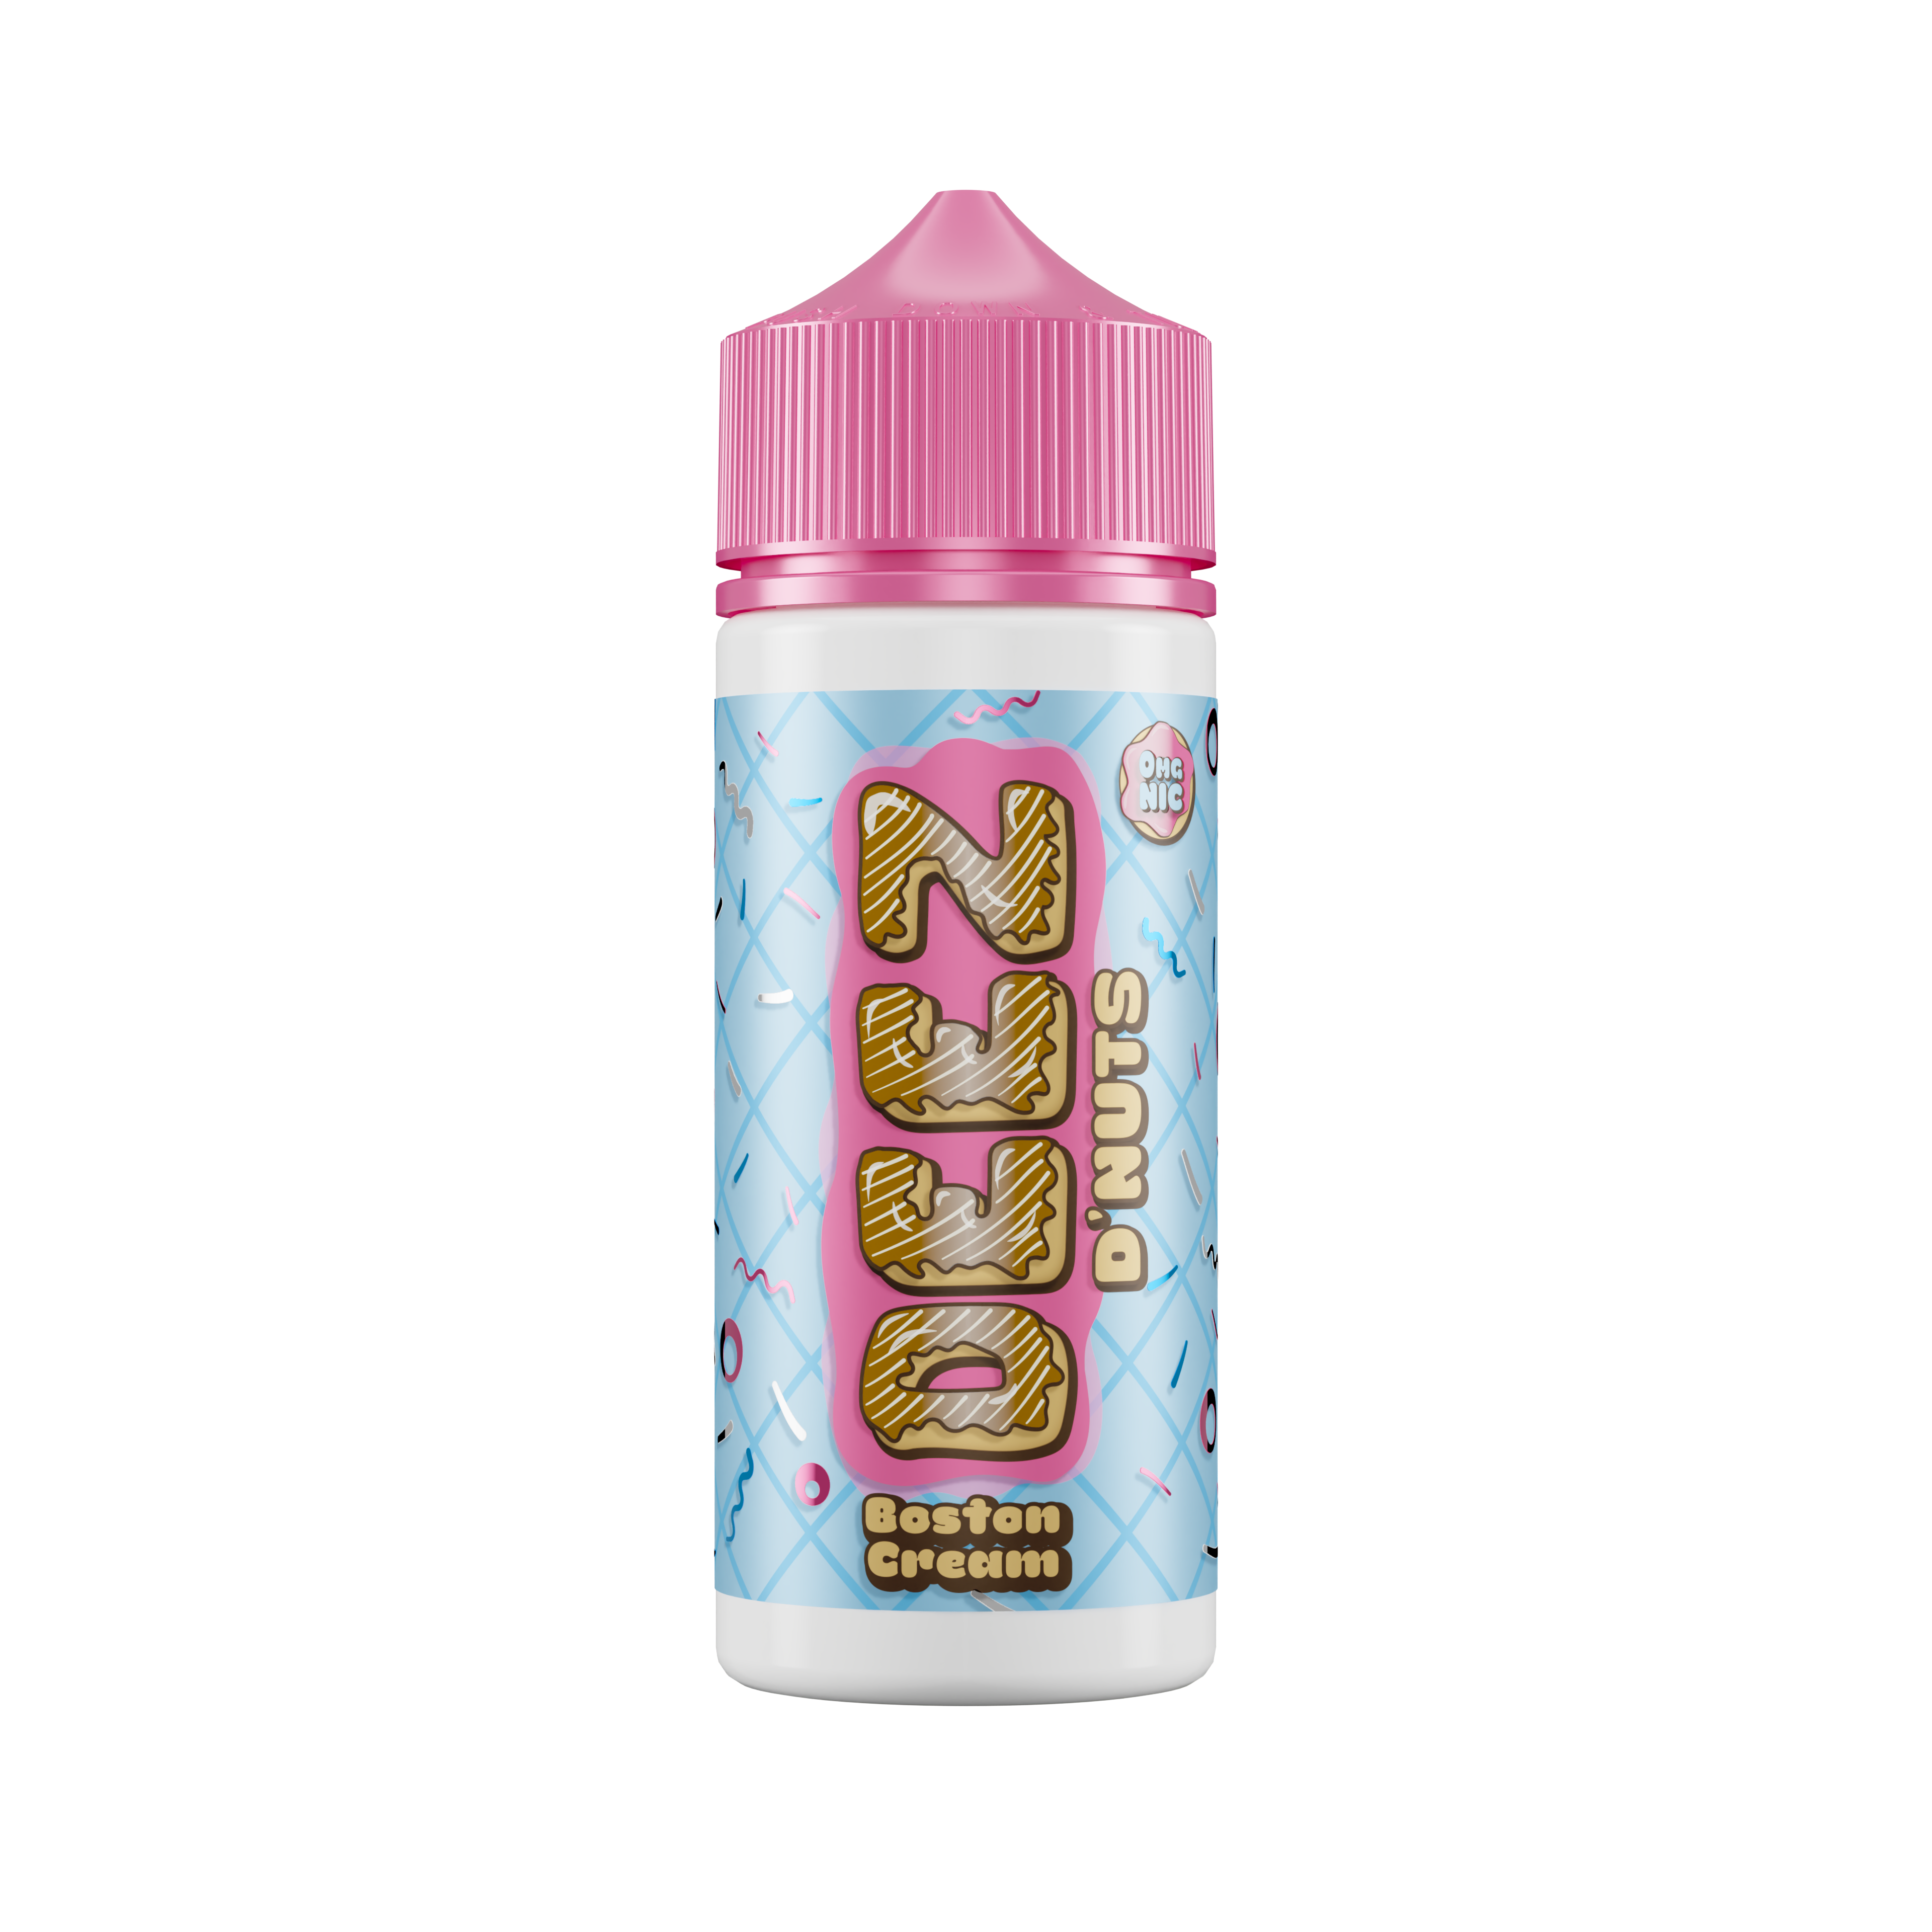 Deez D'nuts - Boston Cream 100ml E Liquid Shortfill